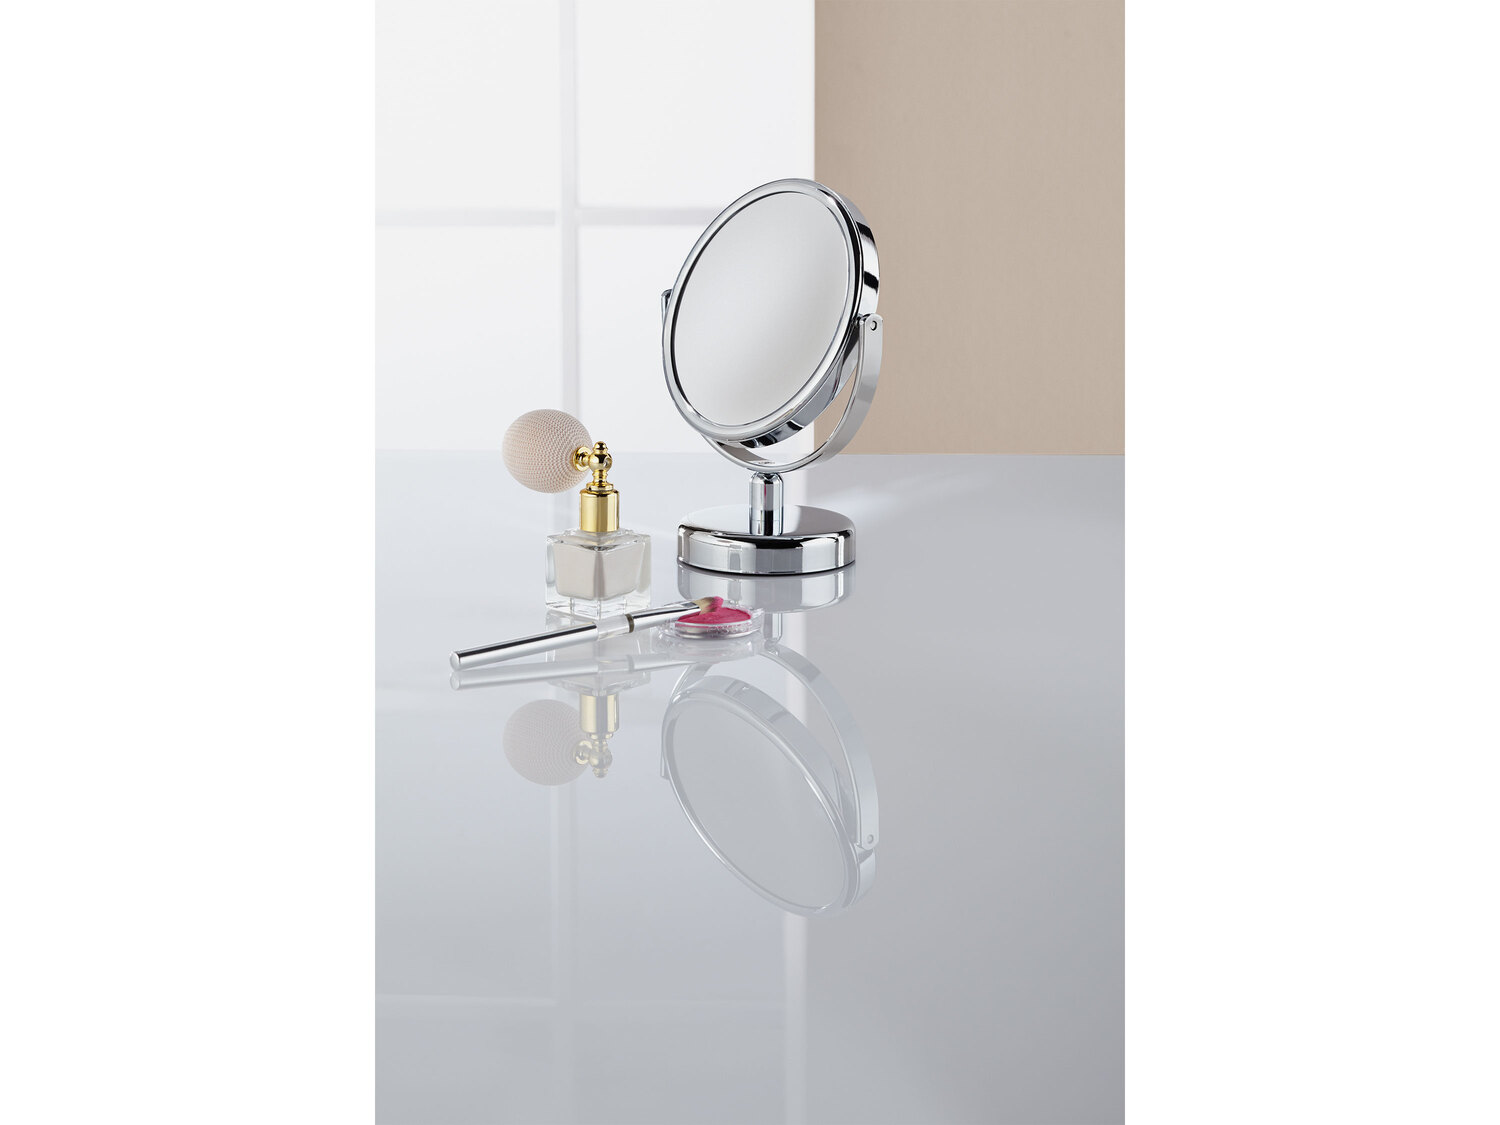 Lusterko kosmetyczne Miomare, cena 24,99 PLN 
- możliwość obrotu o 360°
- ...